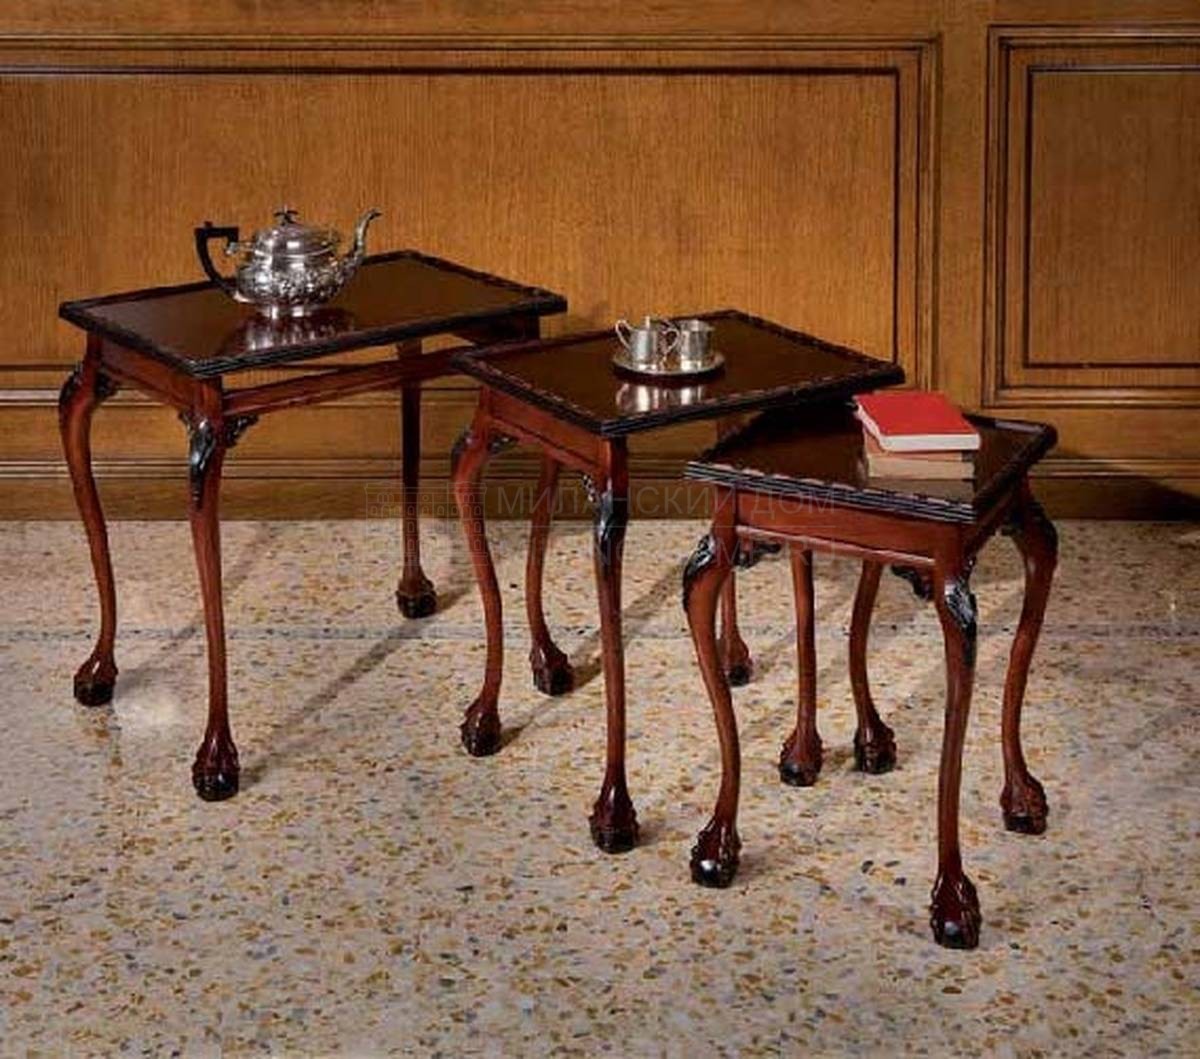 Кофейный столик Minion/21060.430 из Италии фабрики FRANCESCO MOLON